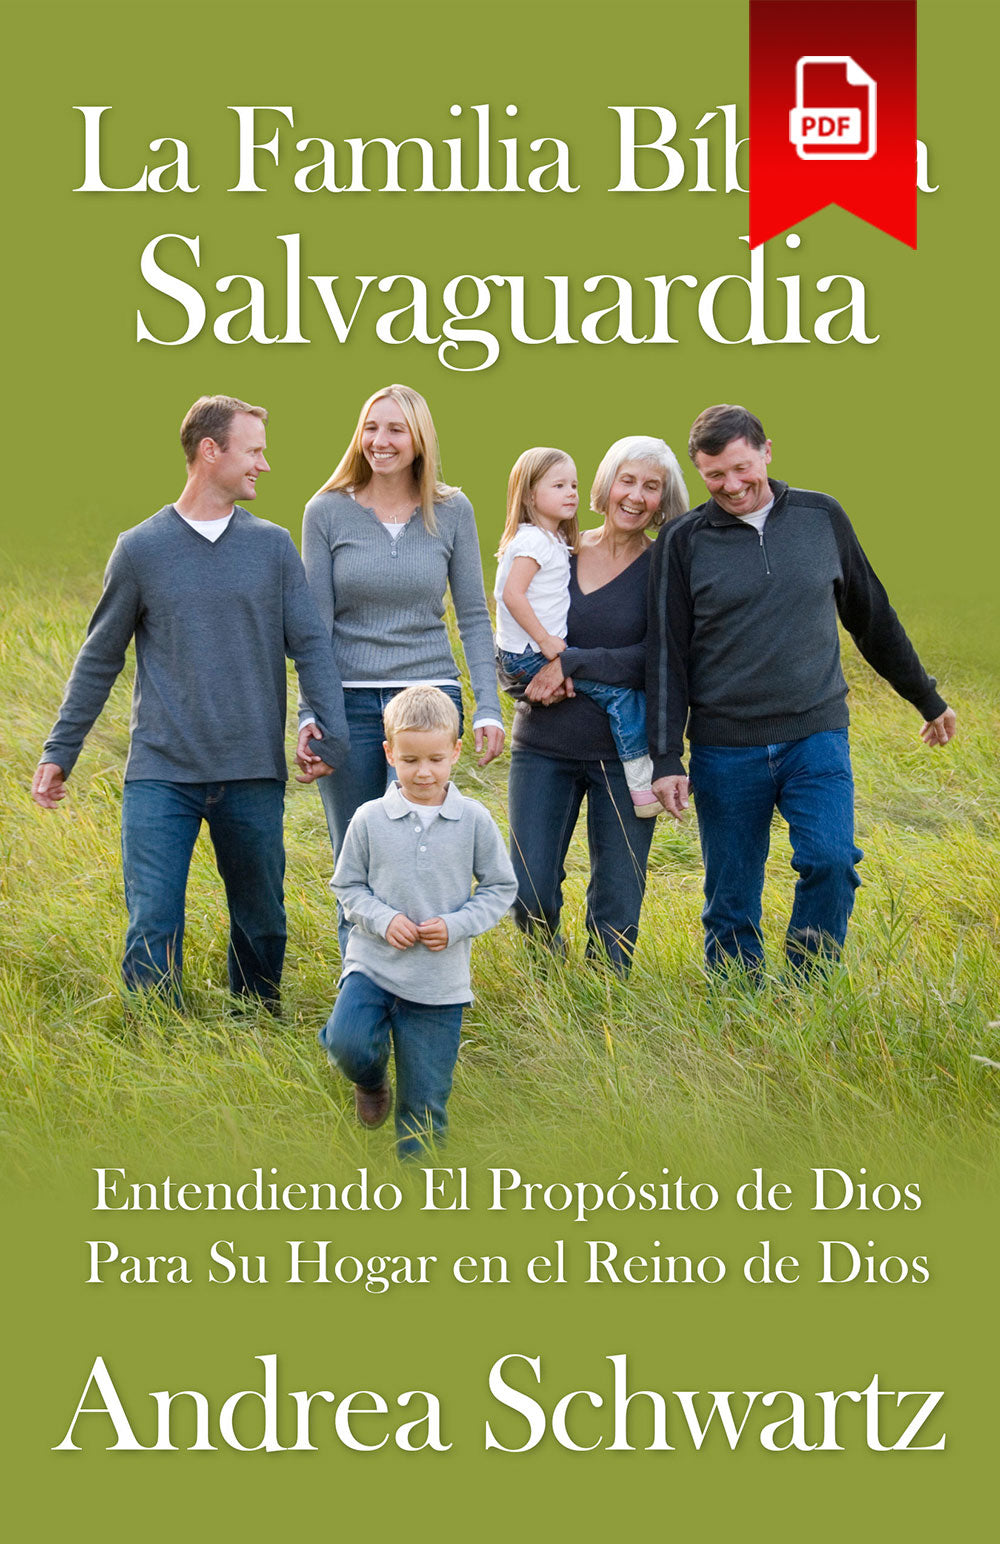 Biblical Trustee Family (La Familia Bíblica Salvaguardia)